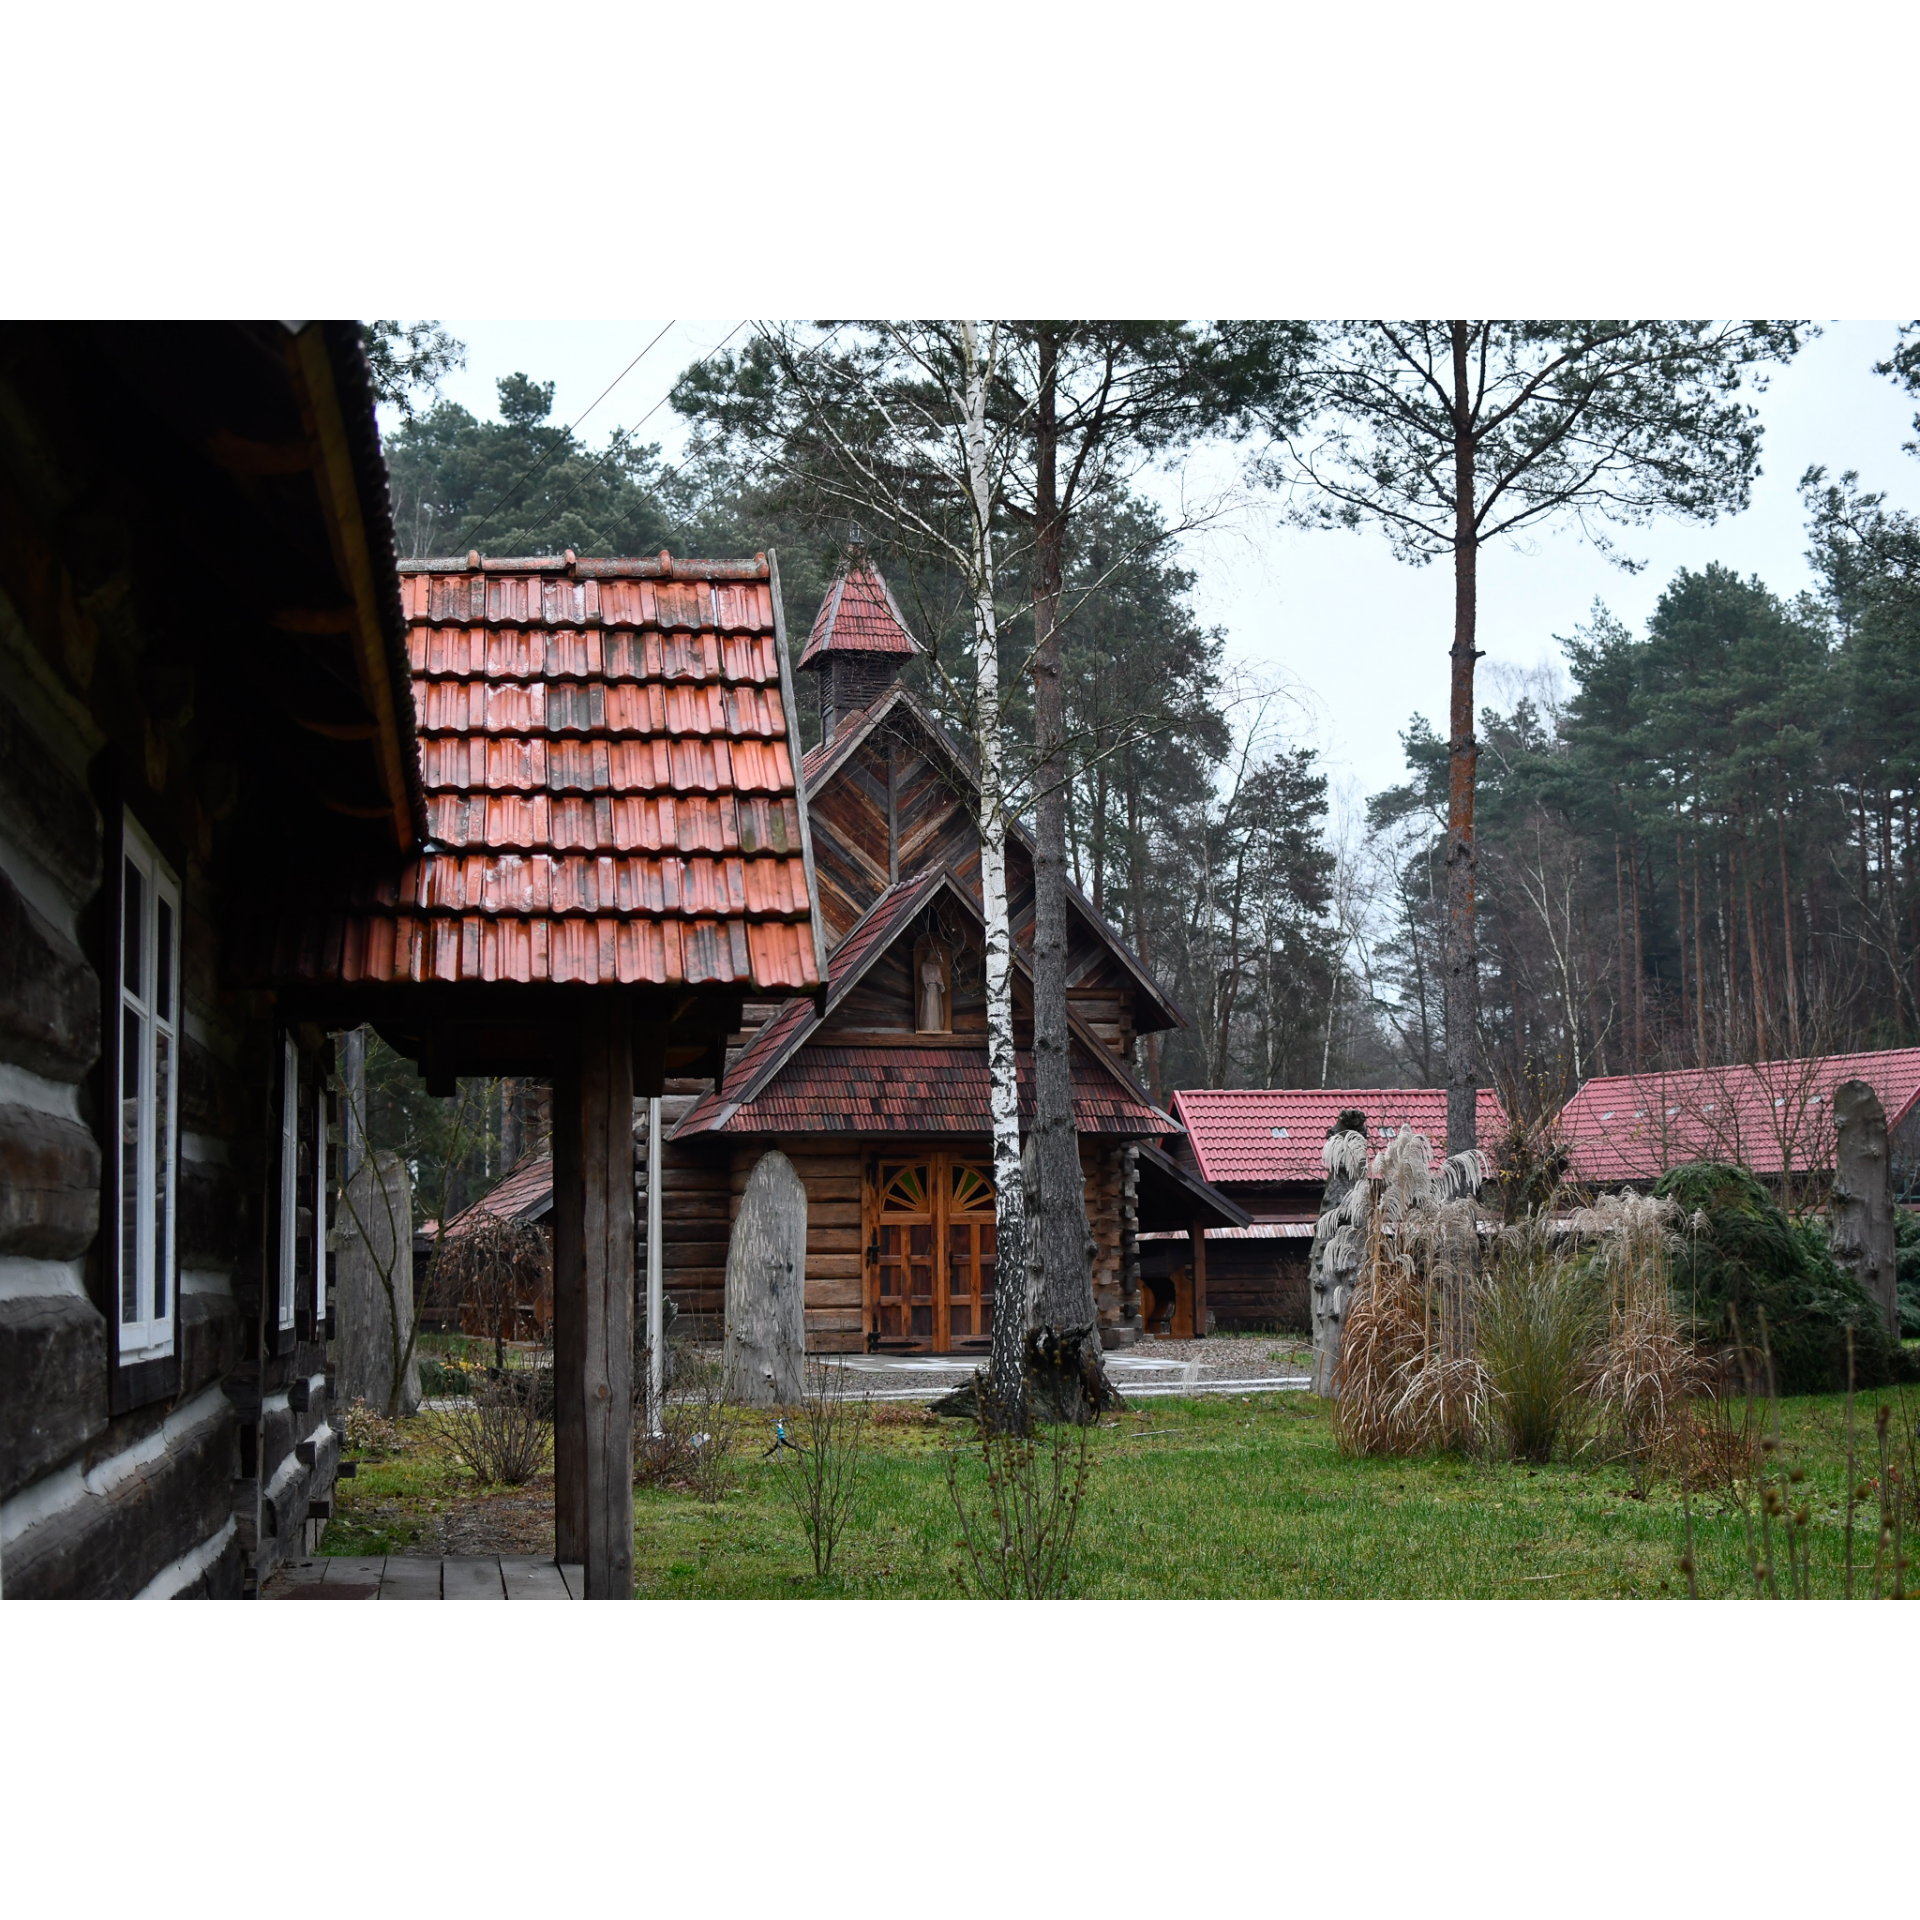 Drewniany kościół z wieżyczką i czerwonym dachem w otoczeniu drewnianych budynków i drzew